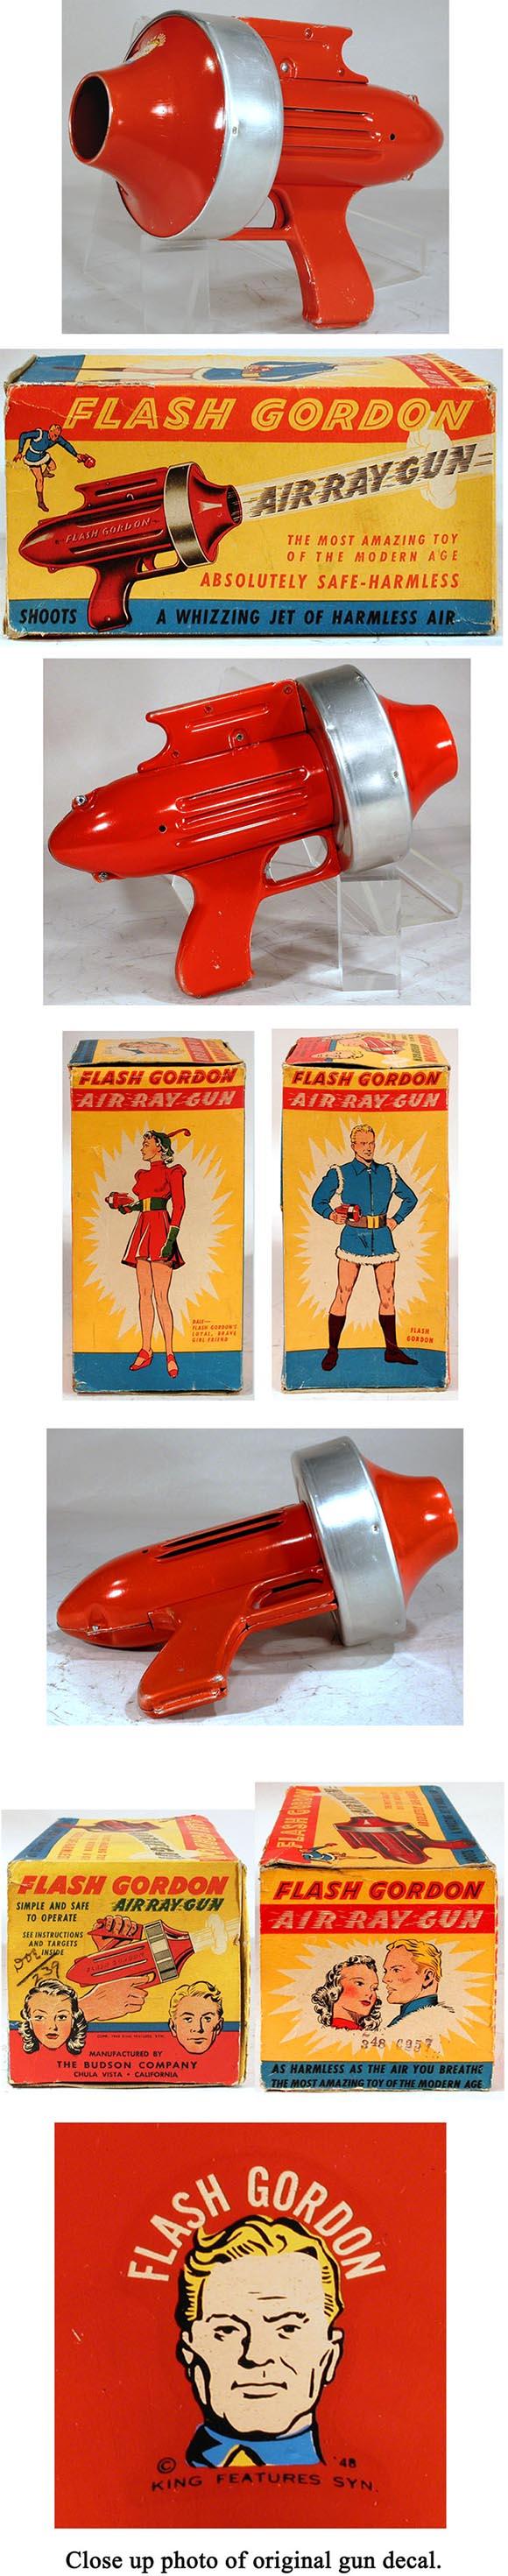 1948 Budson Co., Flash Gordon Air Ray Gun in Original Box